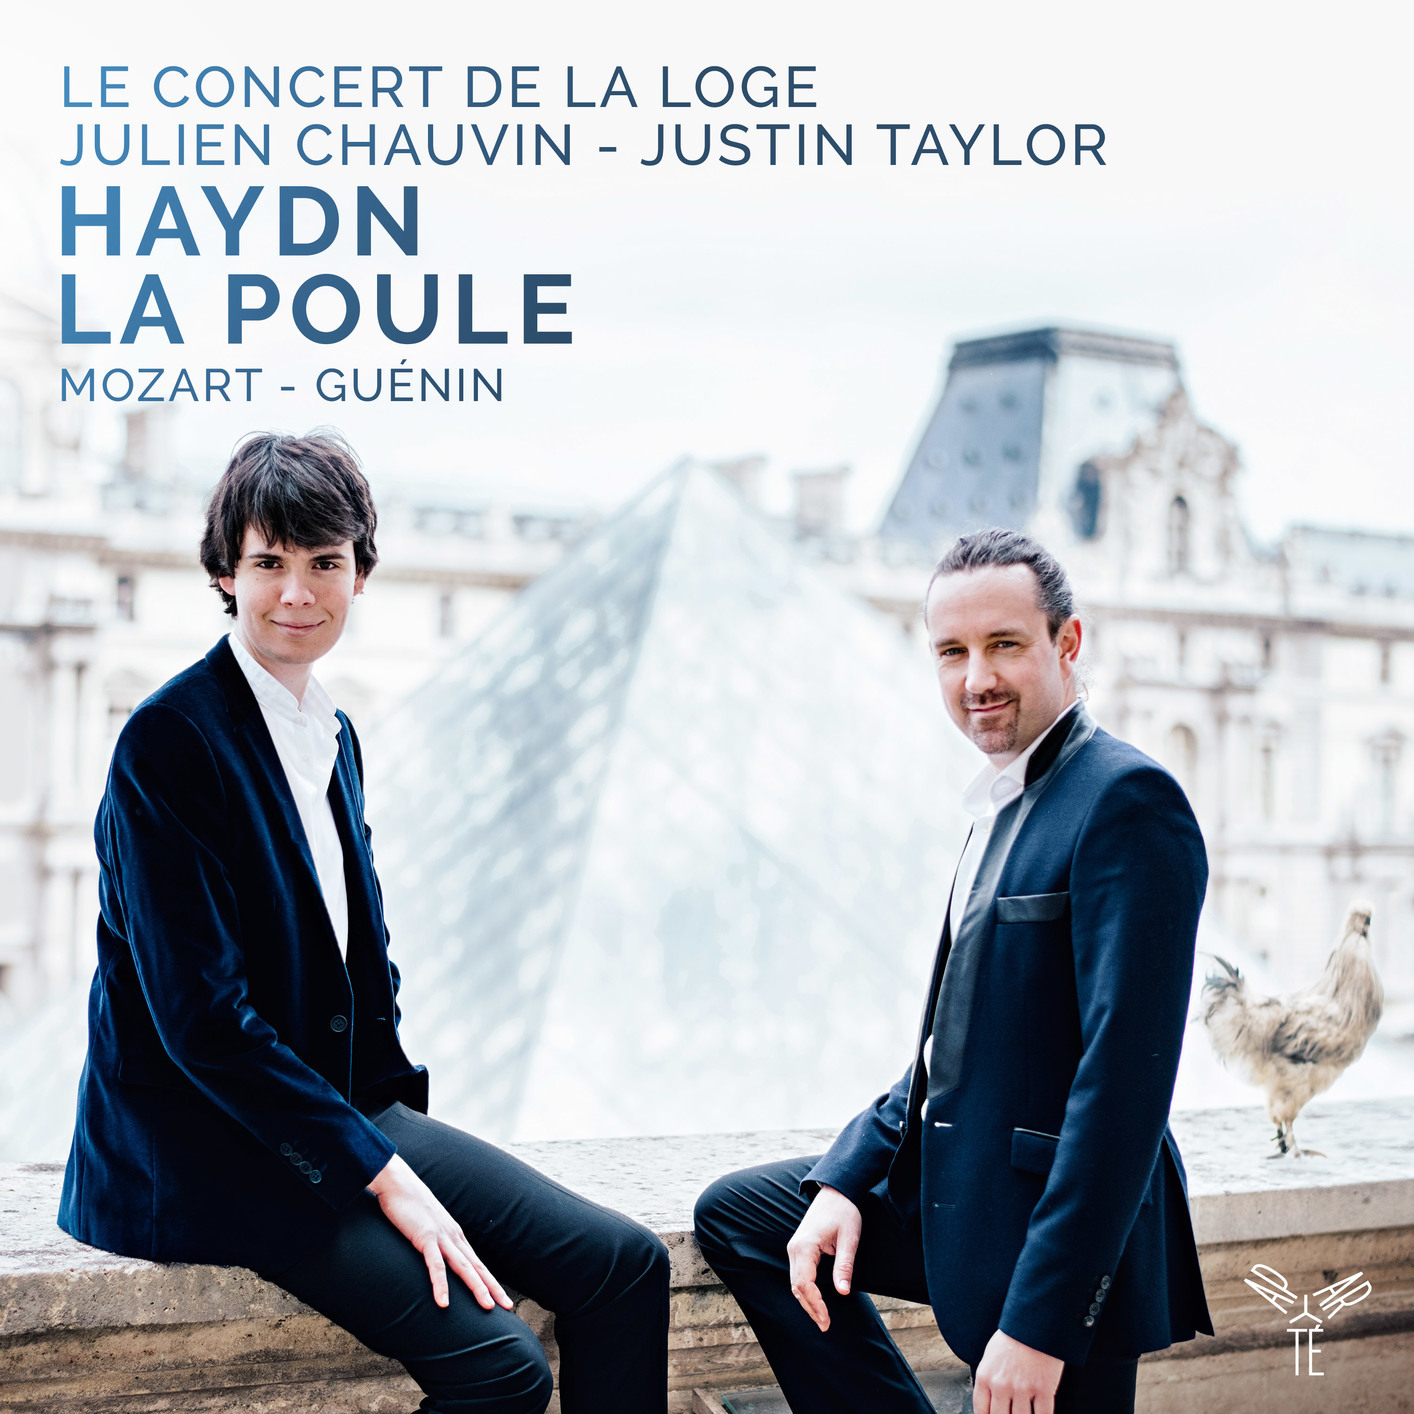 Le Concert de la Loge, Julien Chauvin & Justin Taylor - Haydn: Symphony No. 83 "La Poule" (2017) [Qobuz FLAC 24bit/96kHz]